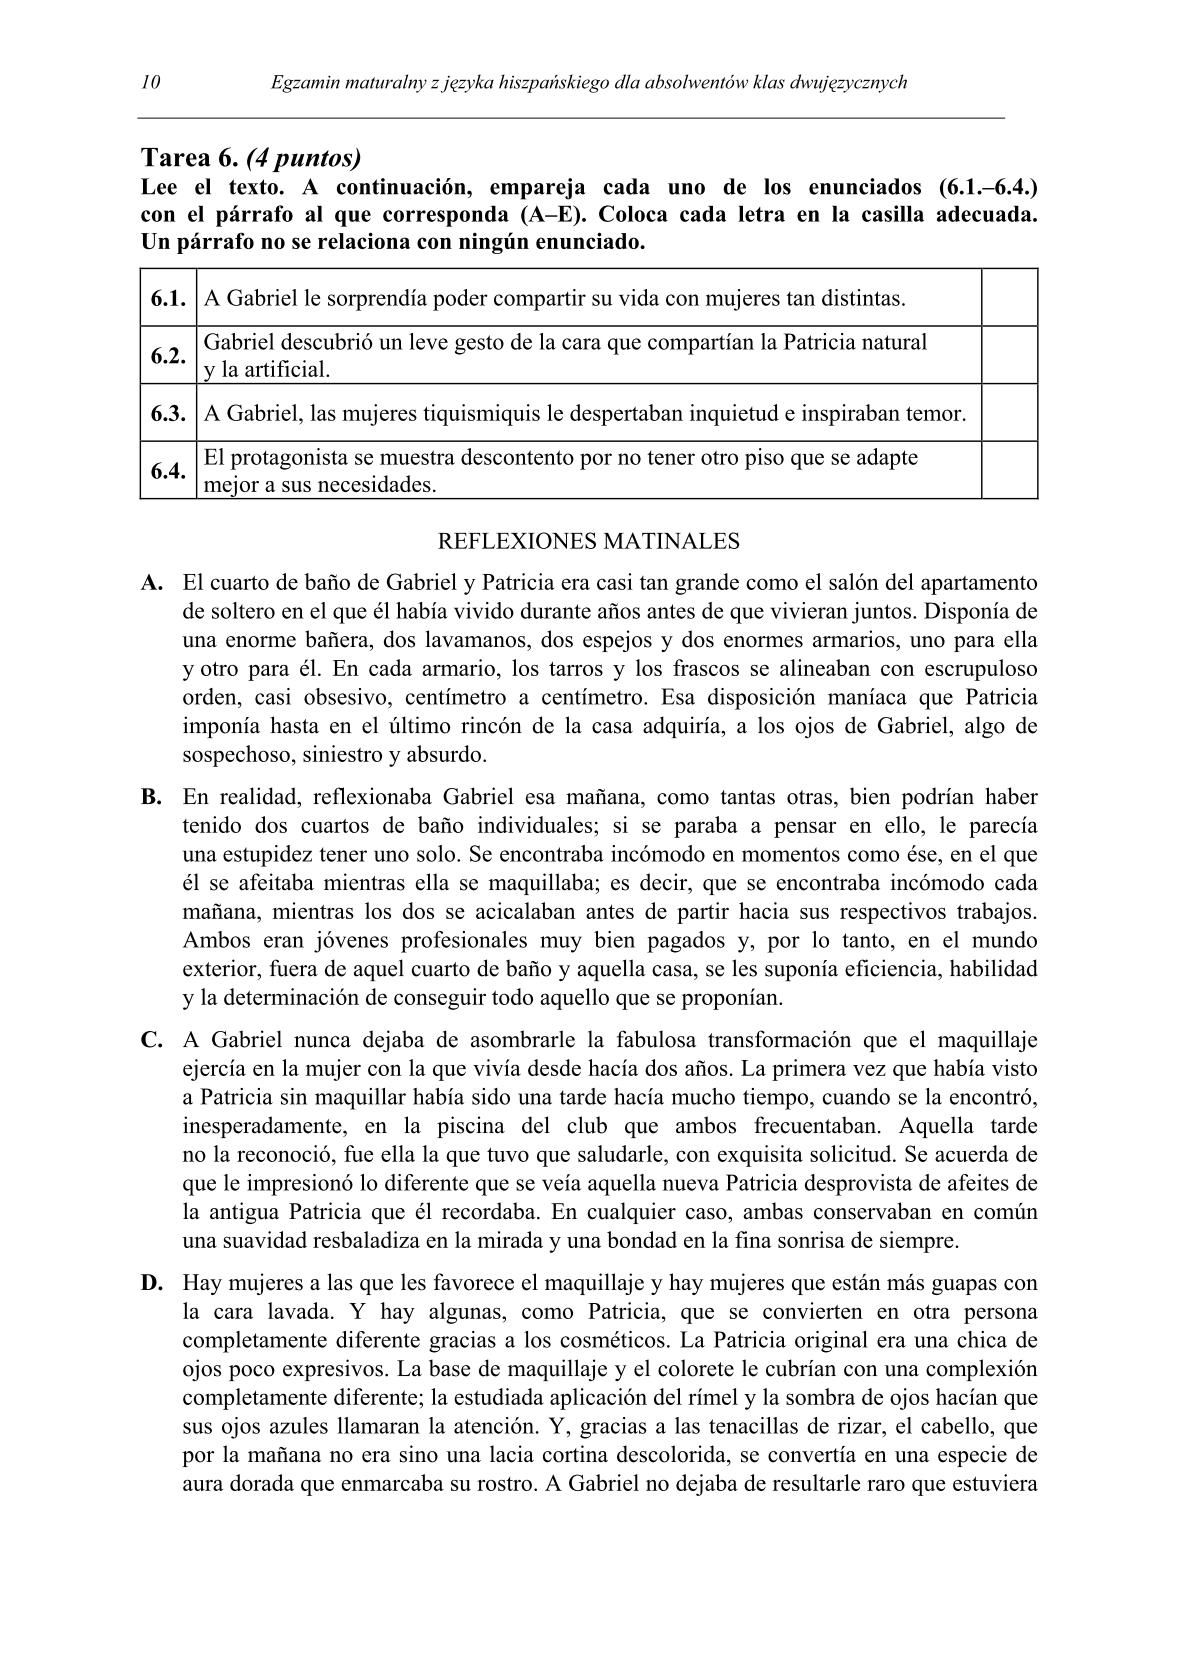 pytania-hiszpanski-dla-absolwentow-klas-dwujezycznych-matura-2014-str.10